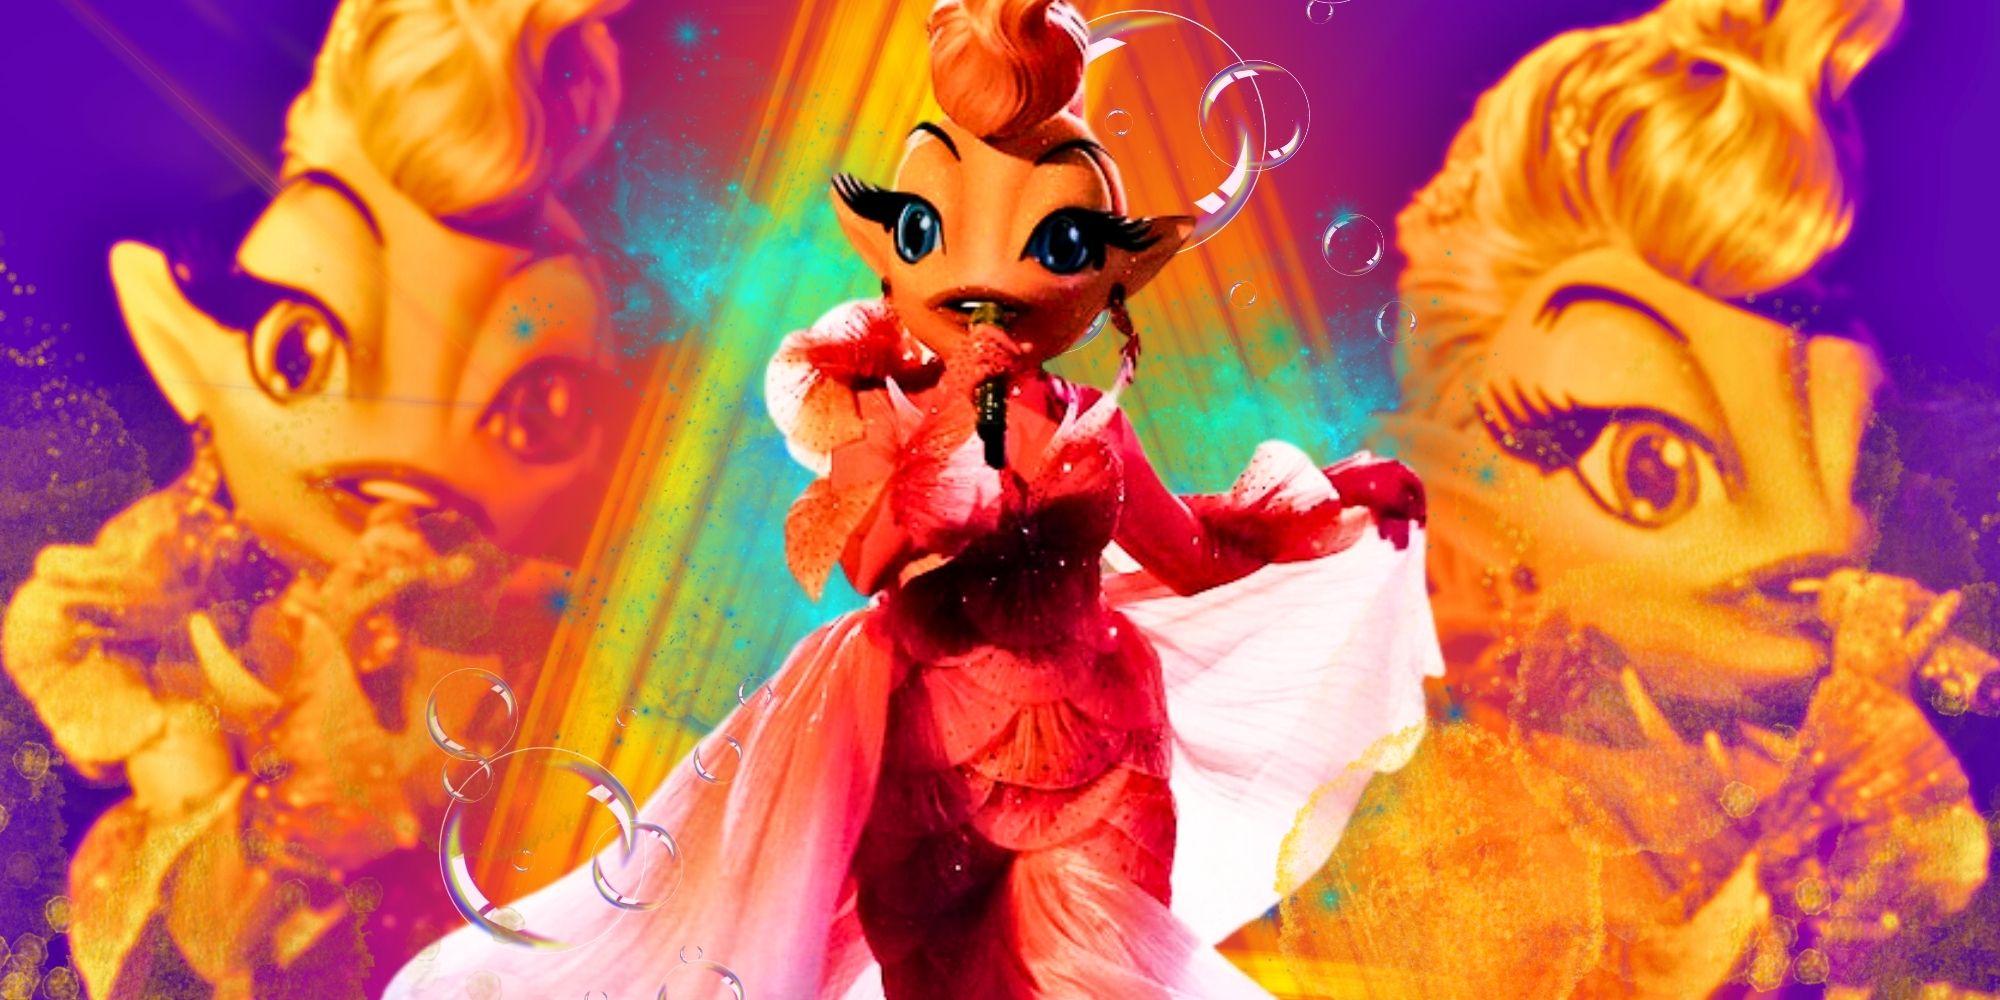  The Masked Singer Goldfish costume